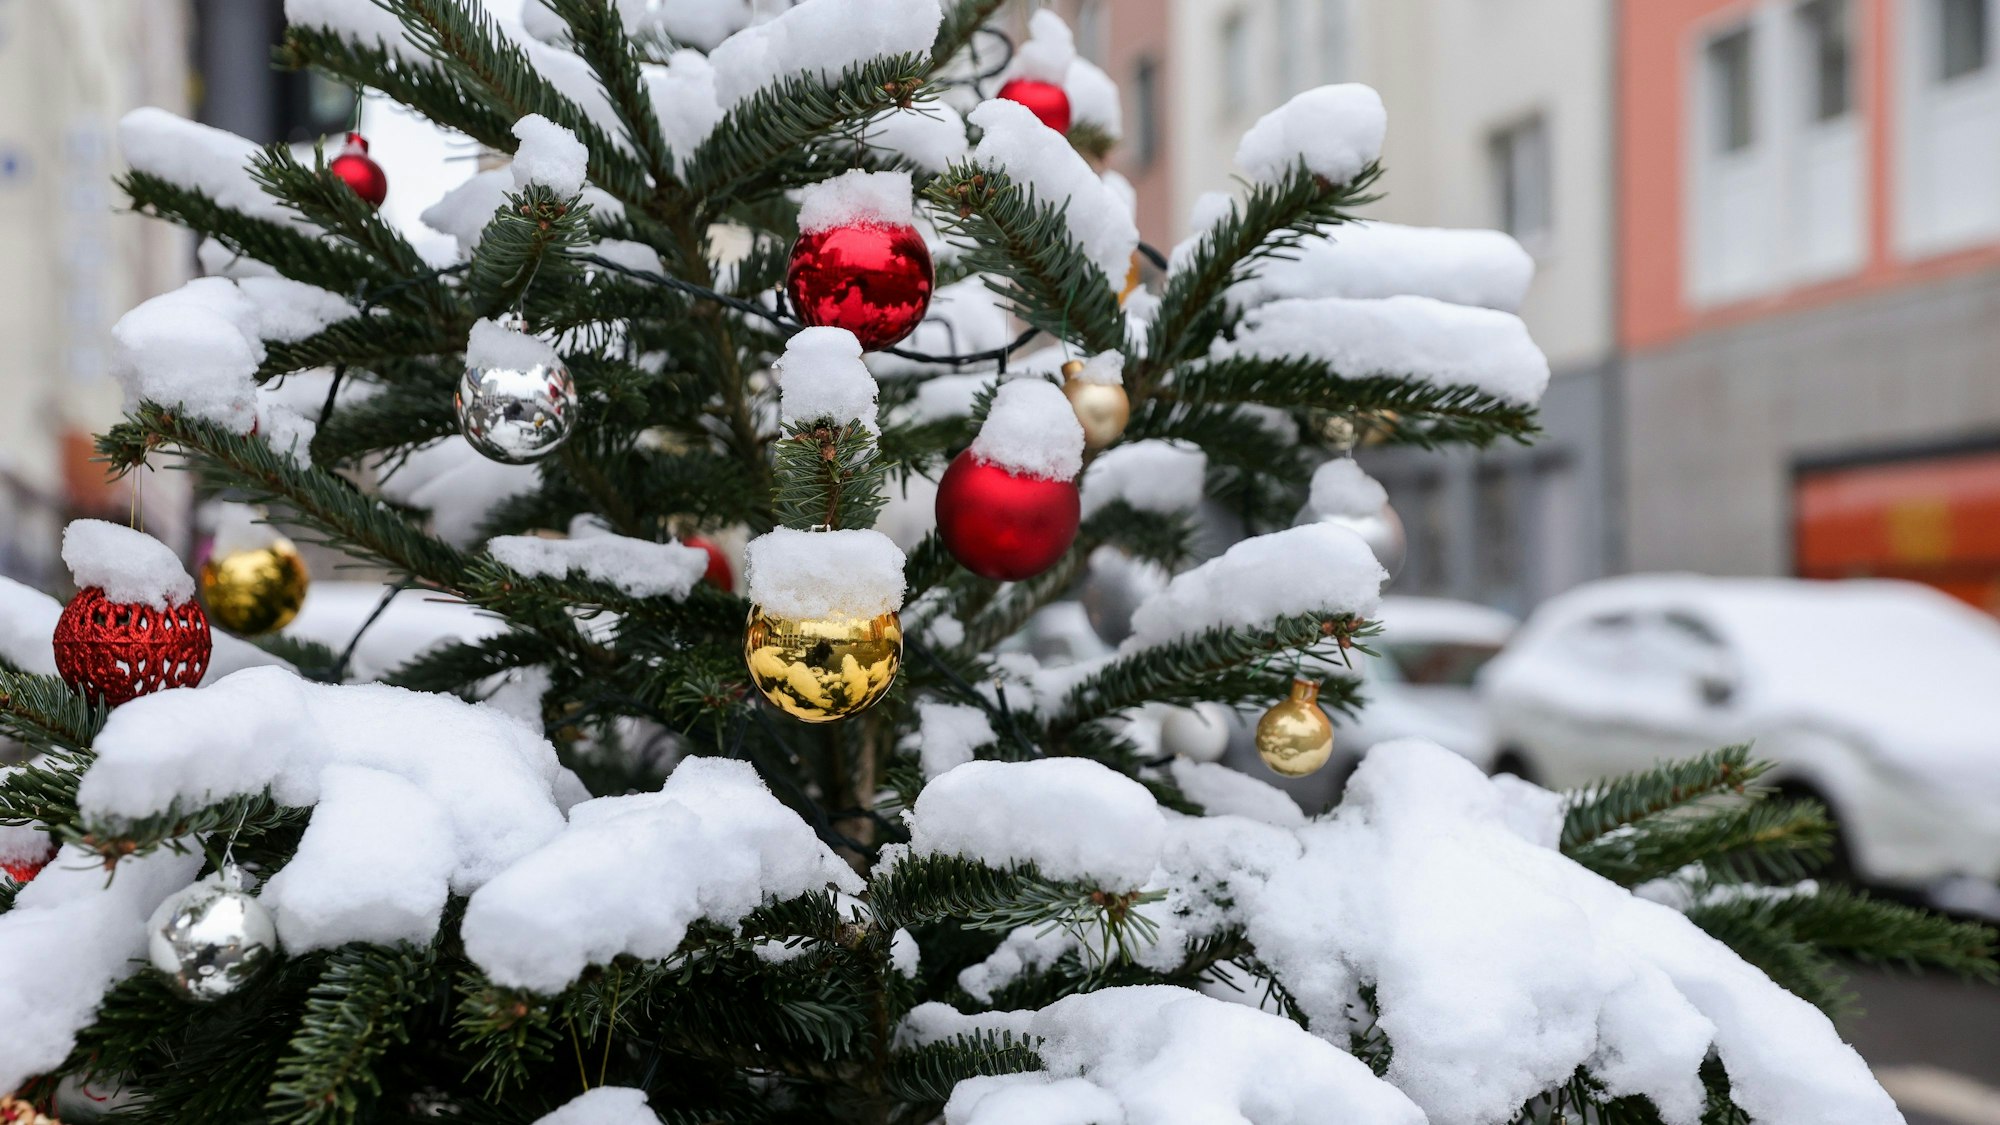 Schnee in Köln.
Verschneiter Weihnachtsbaum.
Gesehen im Kwatier Latäng.